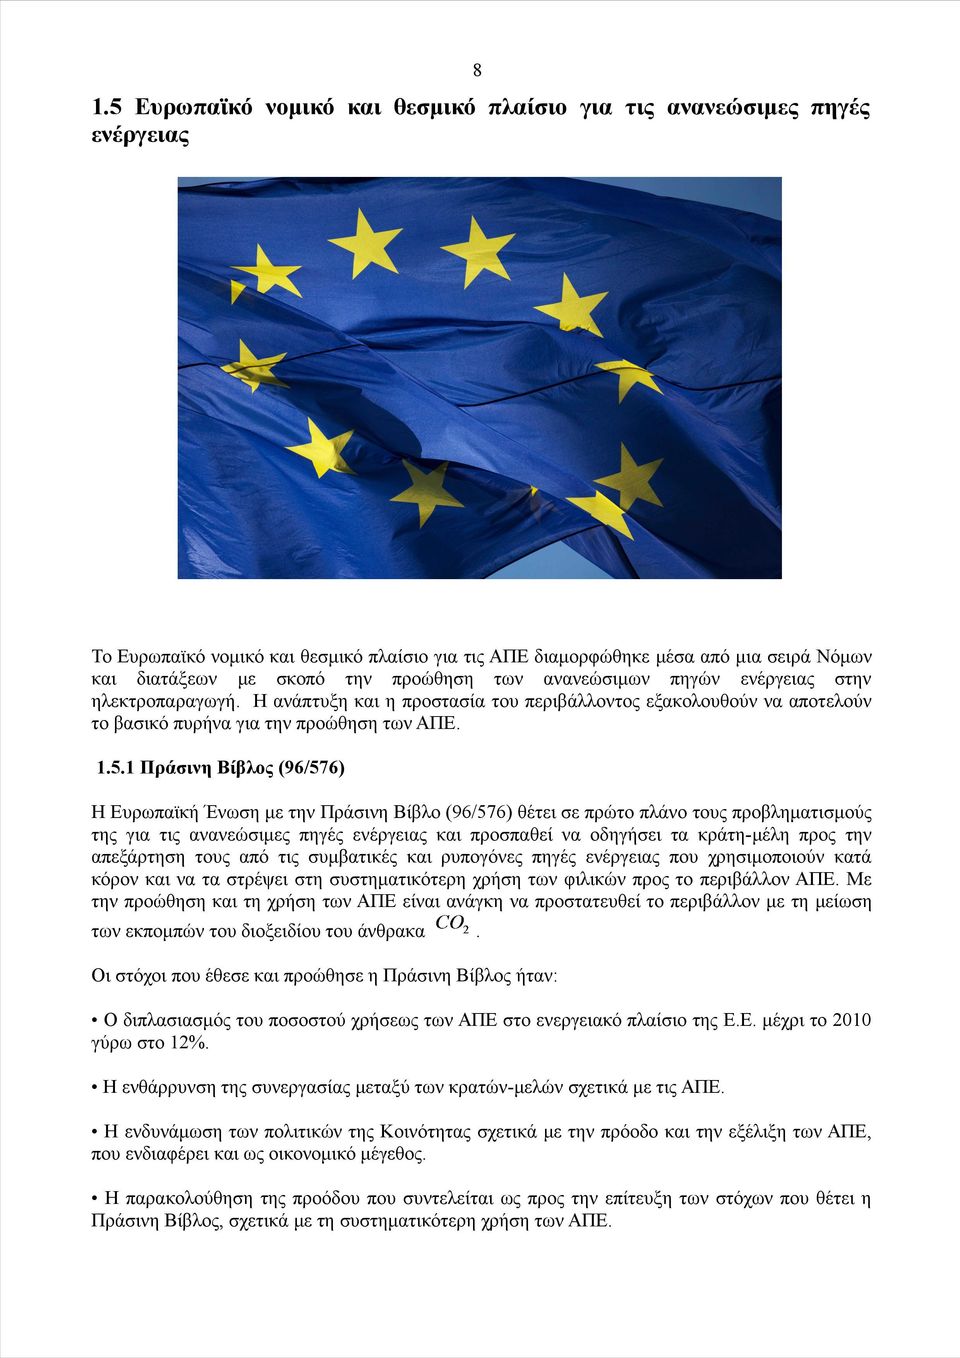 1 Πράσινη Βίβλος (96/576) Η Ευρωπαϊκή Ένωση με την Πράσινη Βίβλο (96/576) θέτει σε πρώτο πλάνο τους προβληματισμούς της για τις ανανεώσιμες πηγές ενέργειας και προσπαθεί να οδηγήσει τα κράτη-μέλη